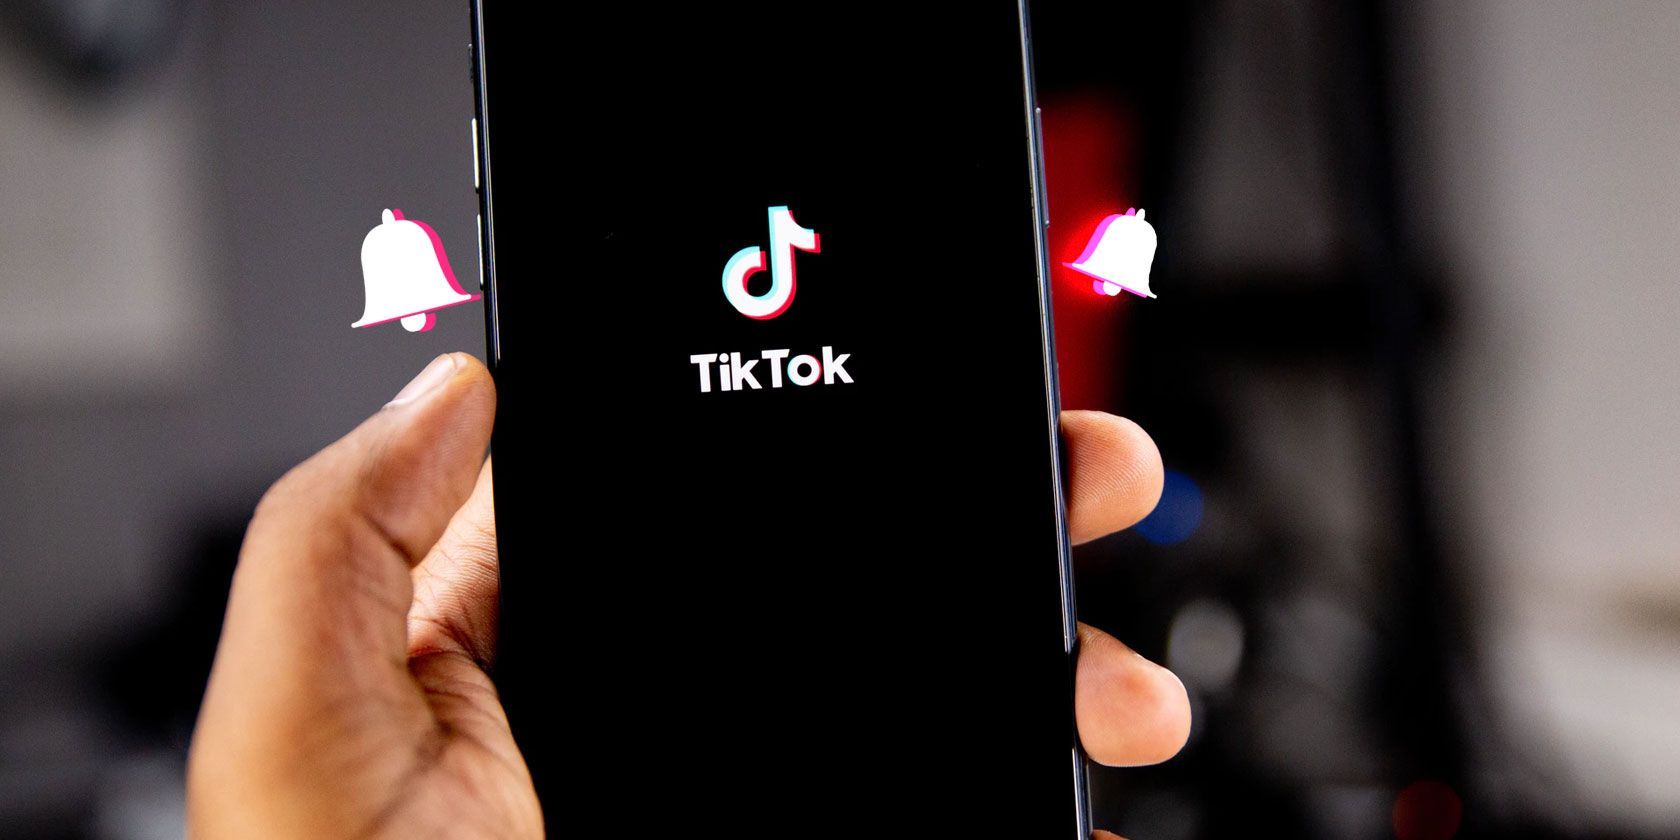 How to Make a TikTok Sound Your iPhone Ringtone or Alarm 